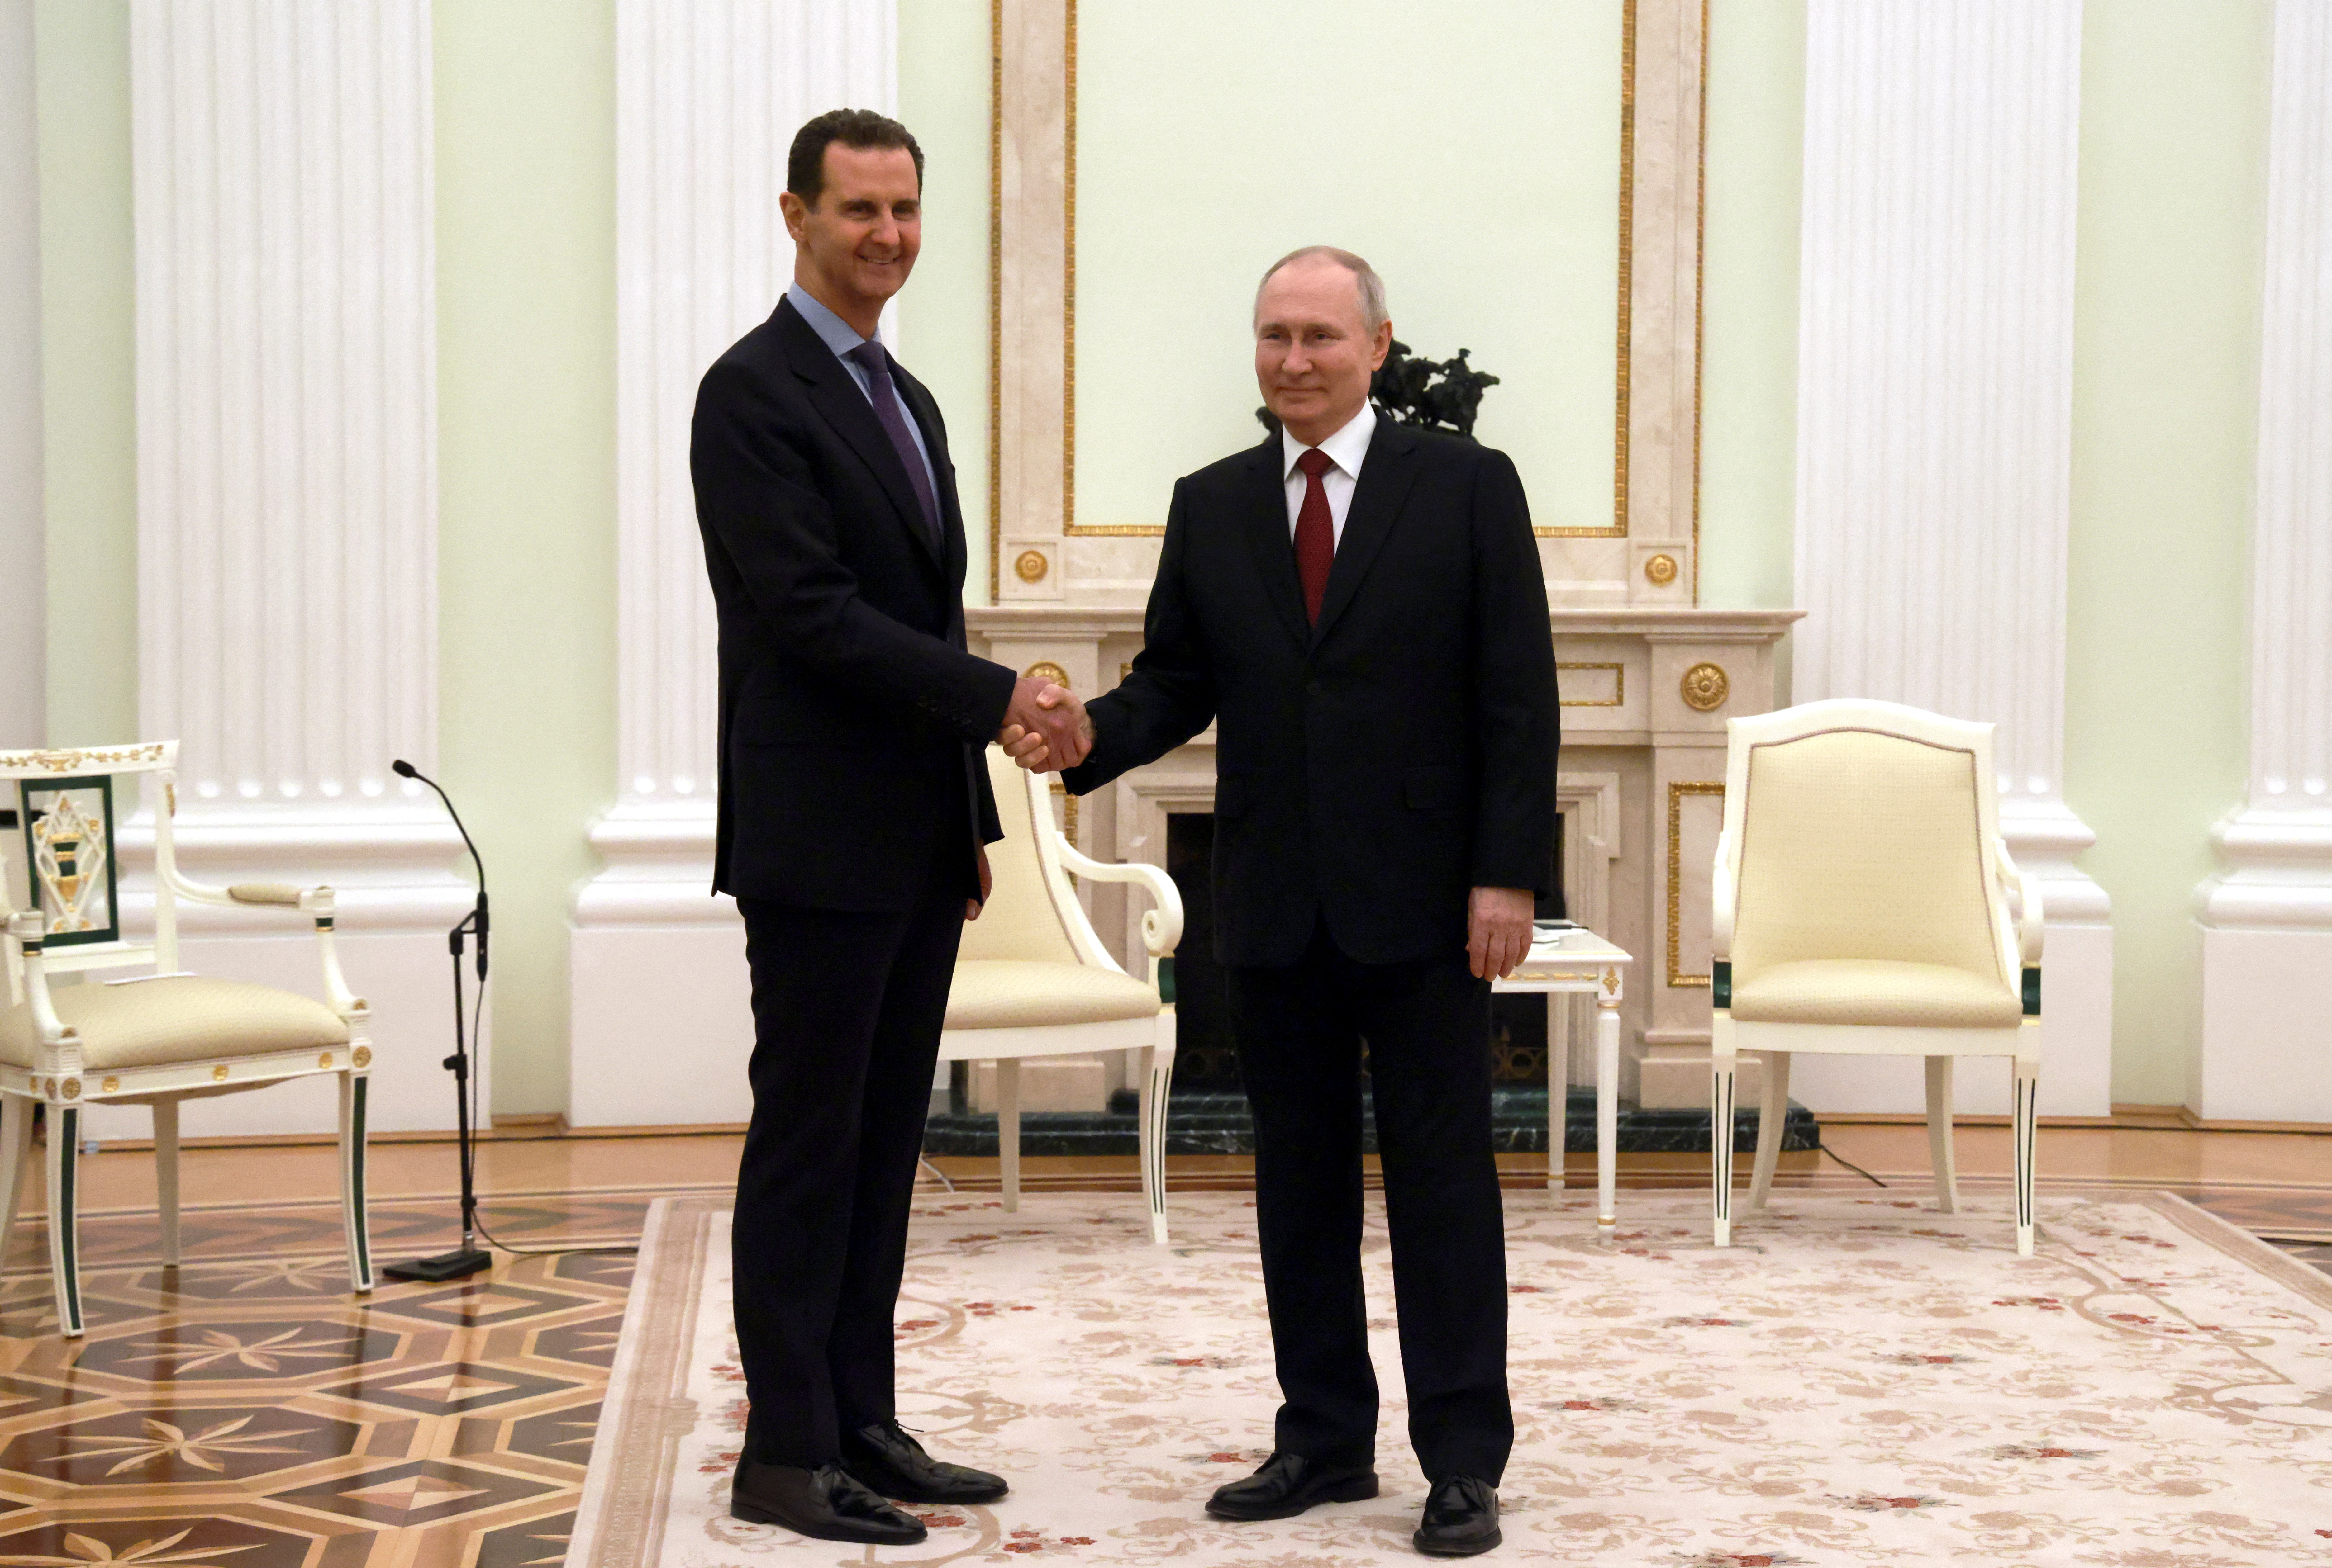 El pasado 19 de marzo, Zelensky sancionó al dictador sirio Bashar al Assad por apoyar la invasión rusa, mediante un decreto que también establece medidas restrictivas para otros altos cargos de su régimen. (REUTERS)